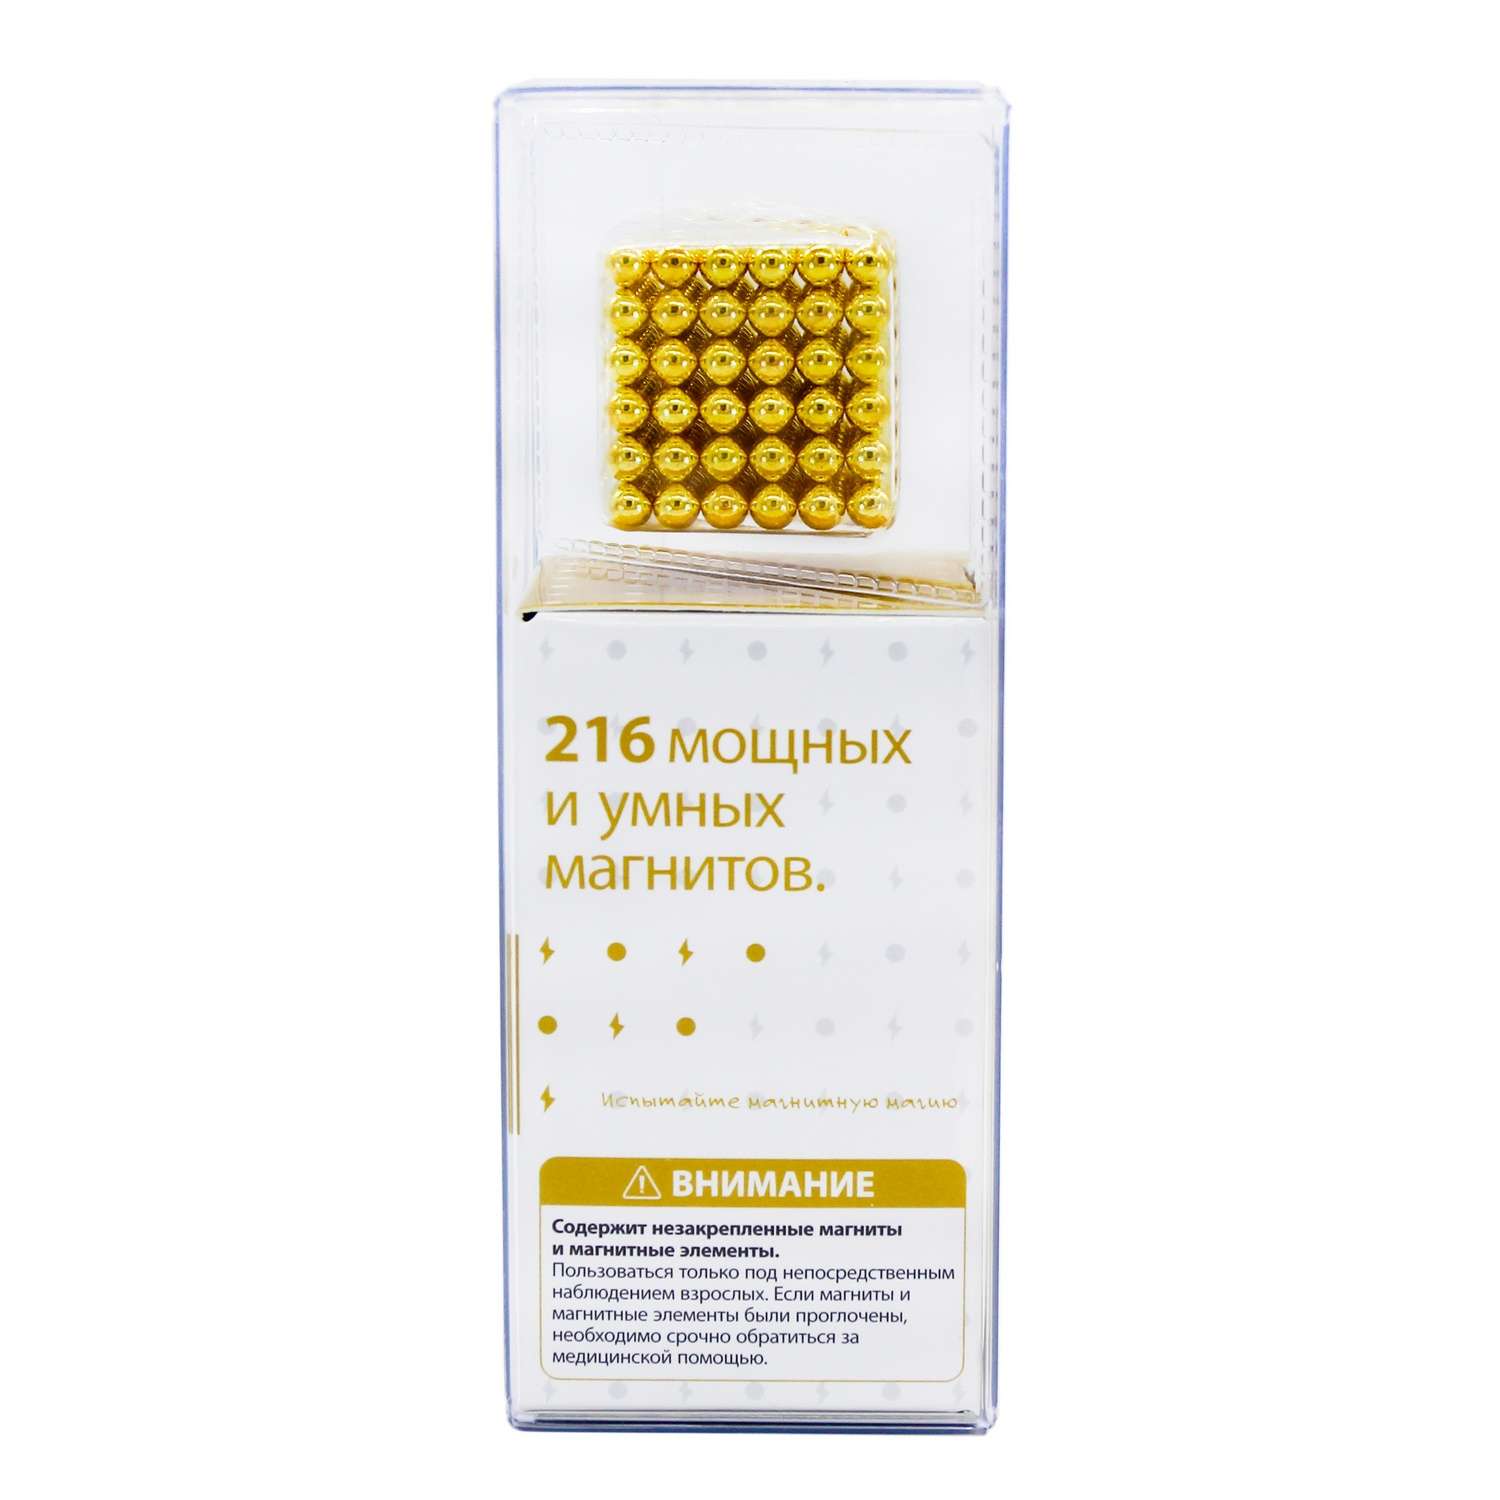 Головоломка магнитная Magnetic Cube золотой неокуб 216 элементов - фото 4